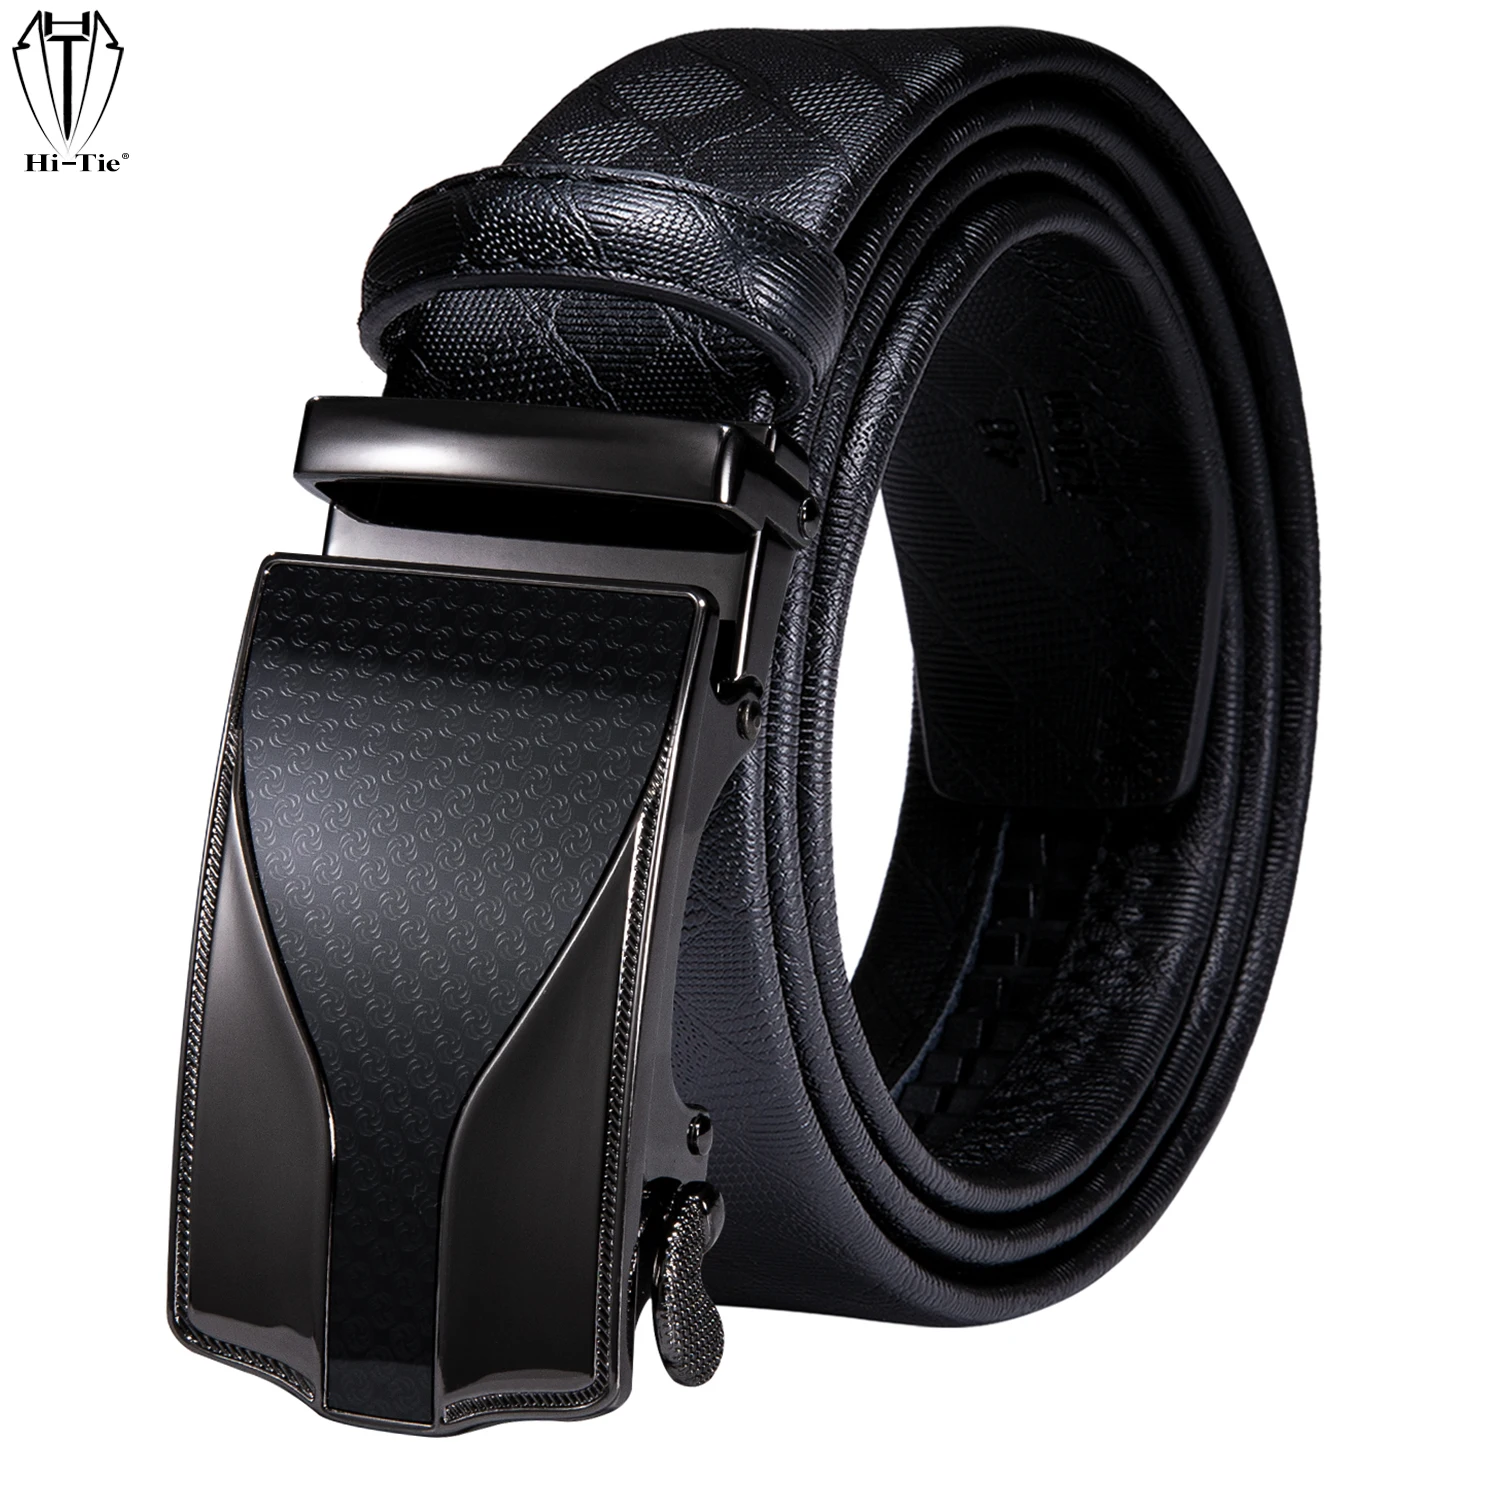 Men's Black Dress Leather Belt Ratchet Automatic Alloy Buckle Replacements